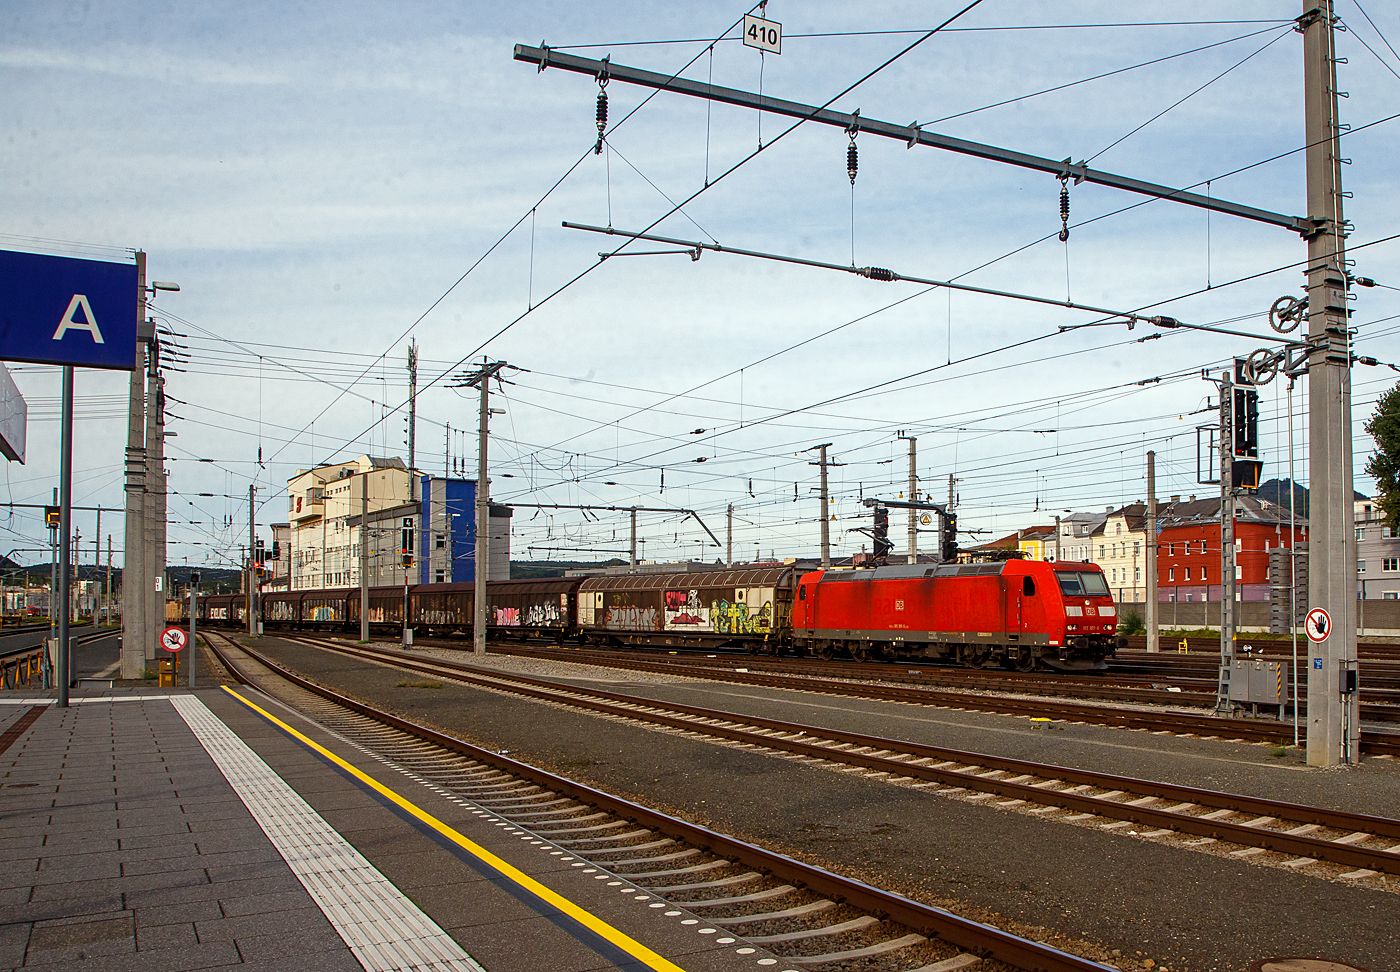 Die 185 185-6 (91 80 6185 185-6 D-DB) der DB Cargo fhrt am 12.09.2022 mit einem gemischten Gterzug durch den Hbf Salzburg in Richtung Deutschland.

Die TRAXX F140 AC wurde 2004 bei Bombardier in Kassel unter der Fabriknummer 33669 gebaut. 
